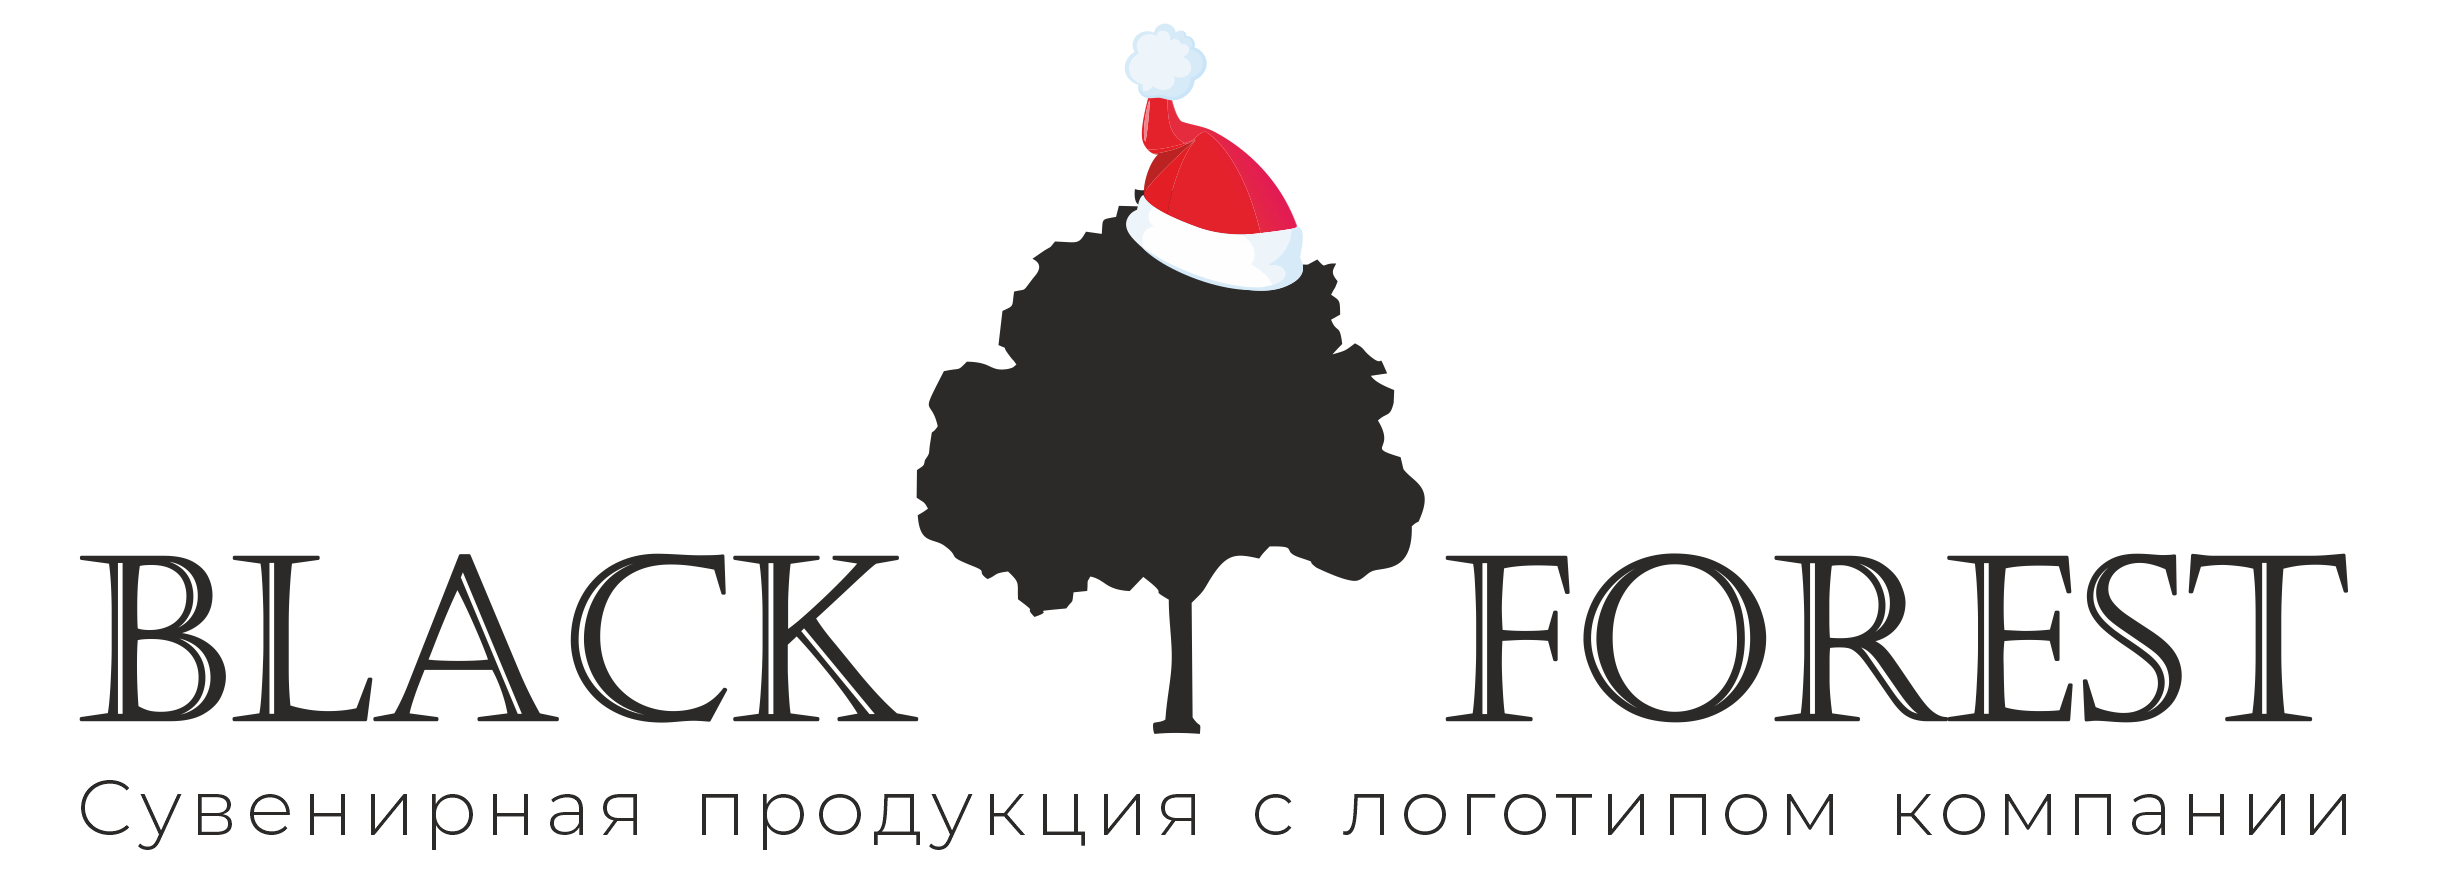 Интернет-магазин подарков и сувениров в Москве - «BlackForest»